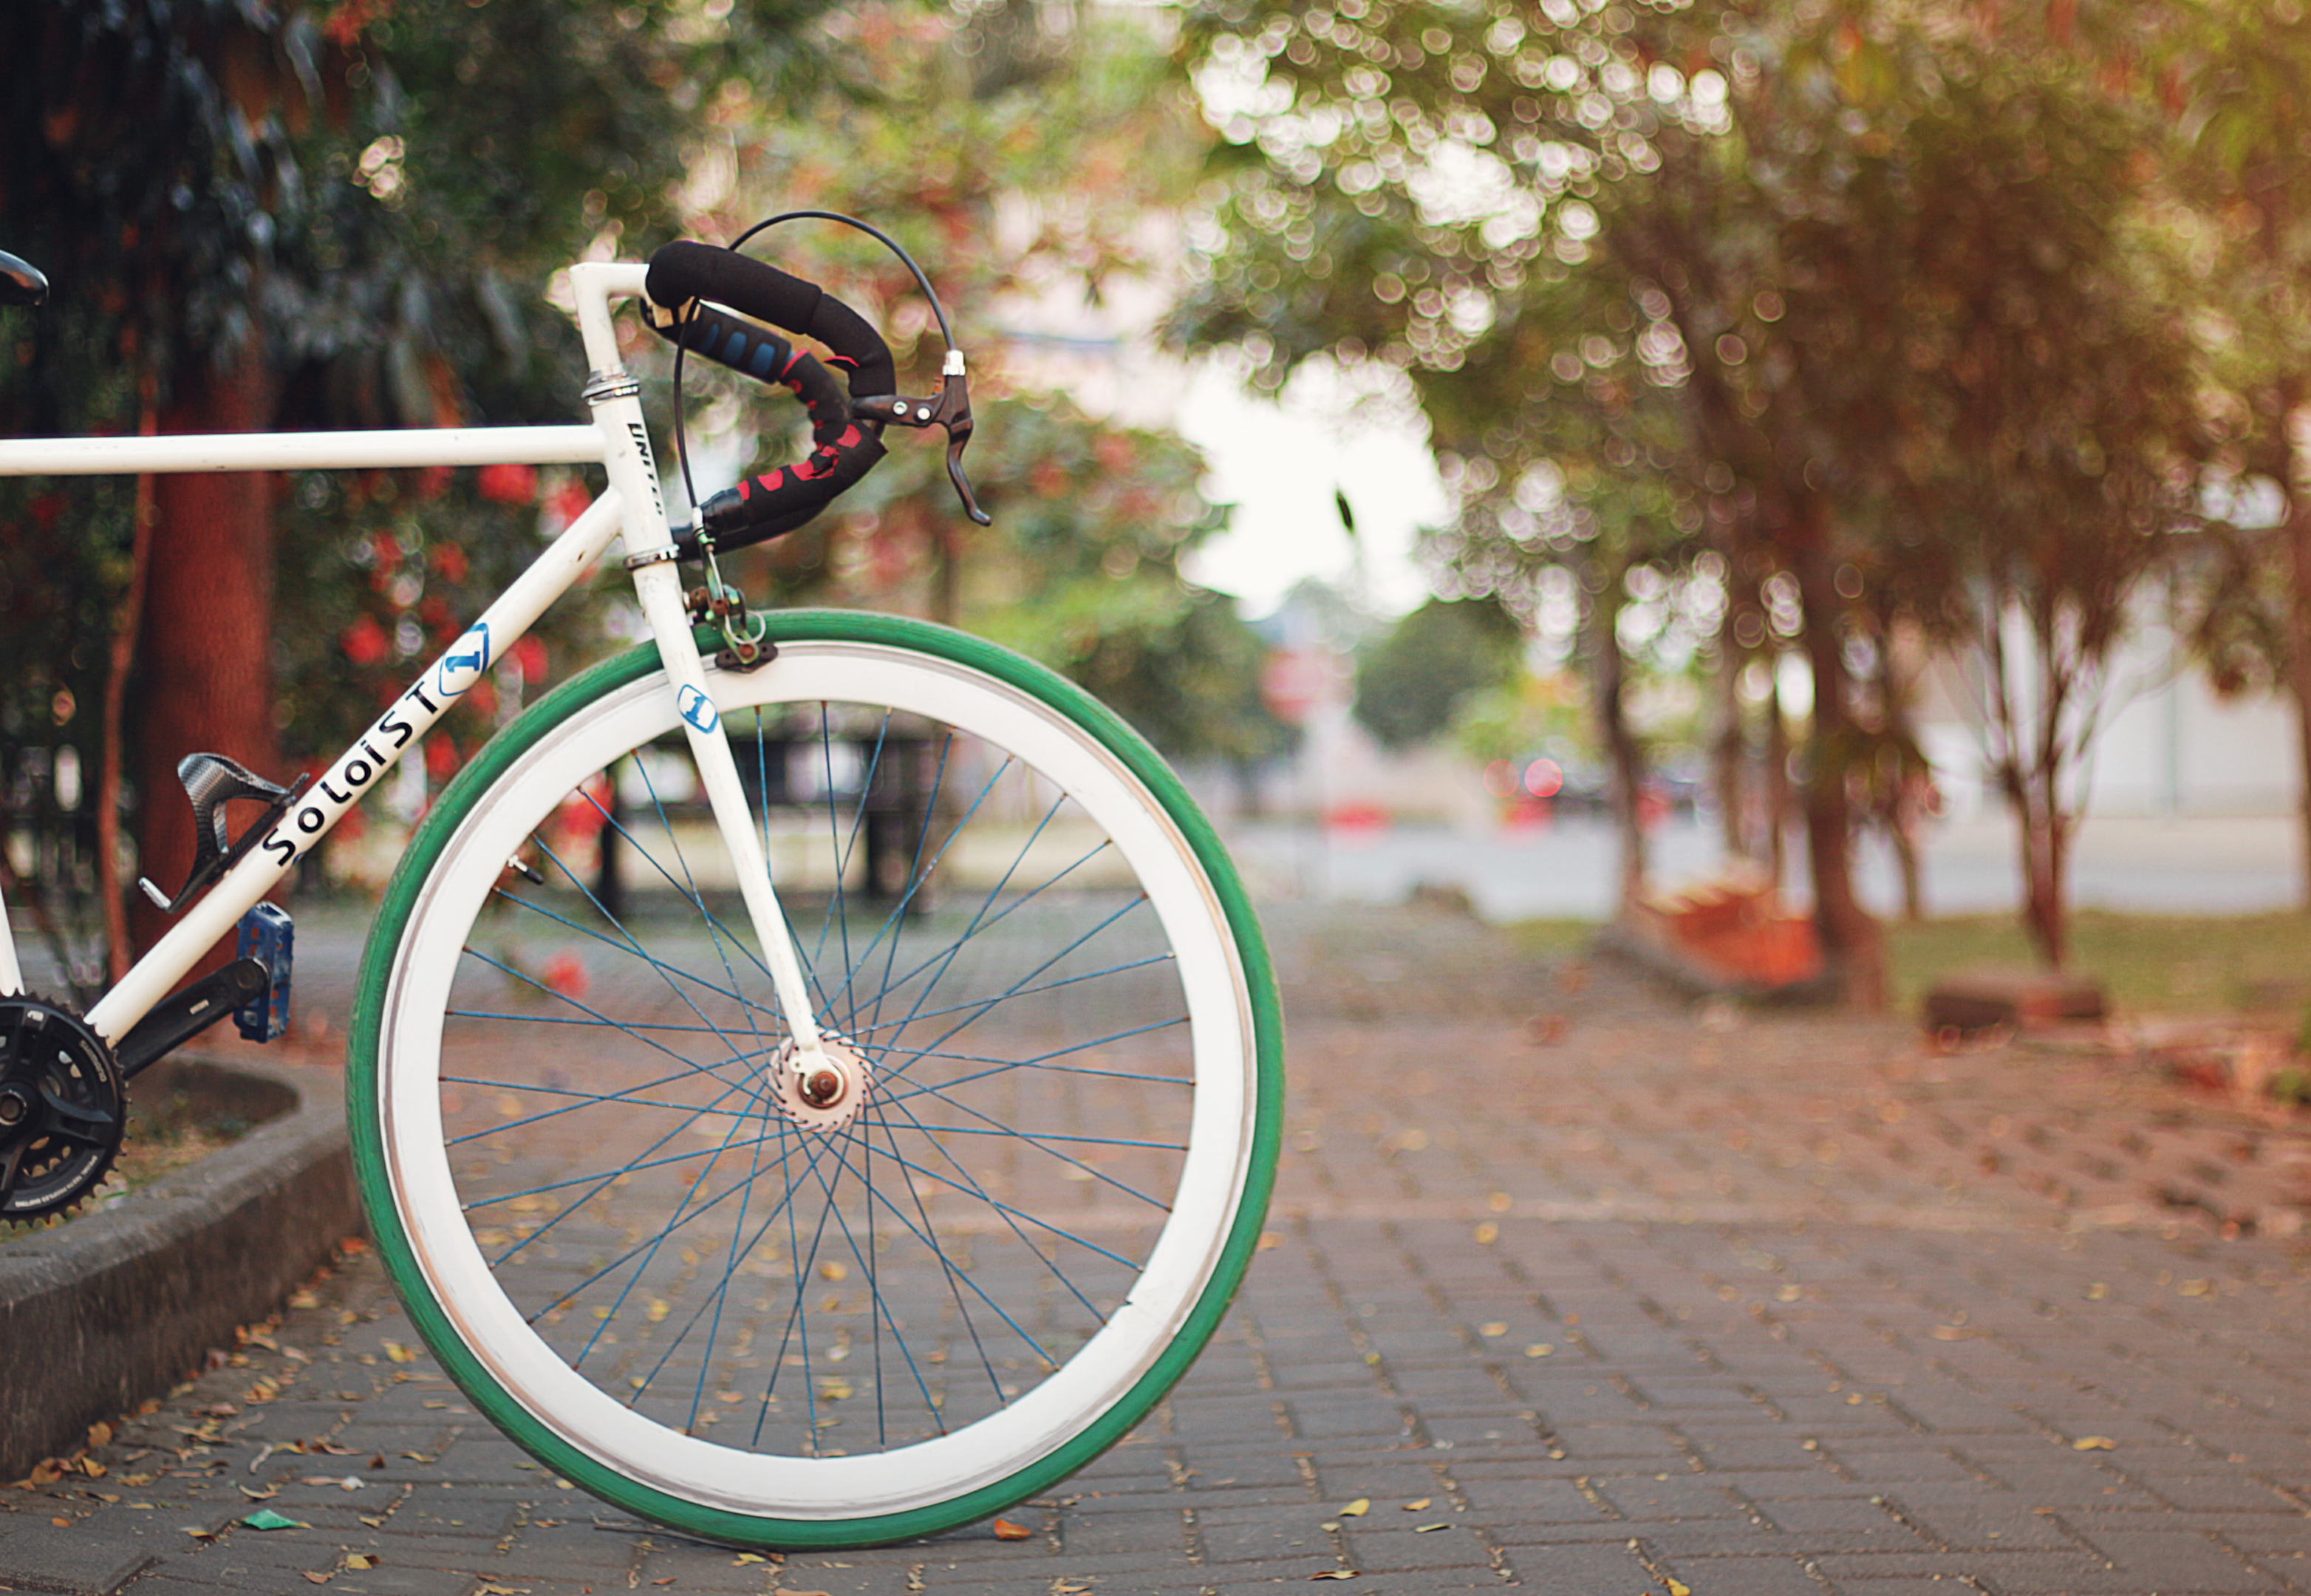 Andar de bicicleta na cidade possui muitos benefícios